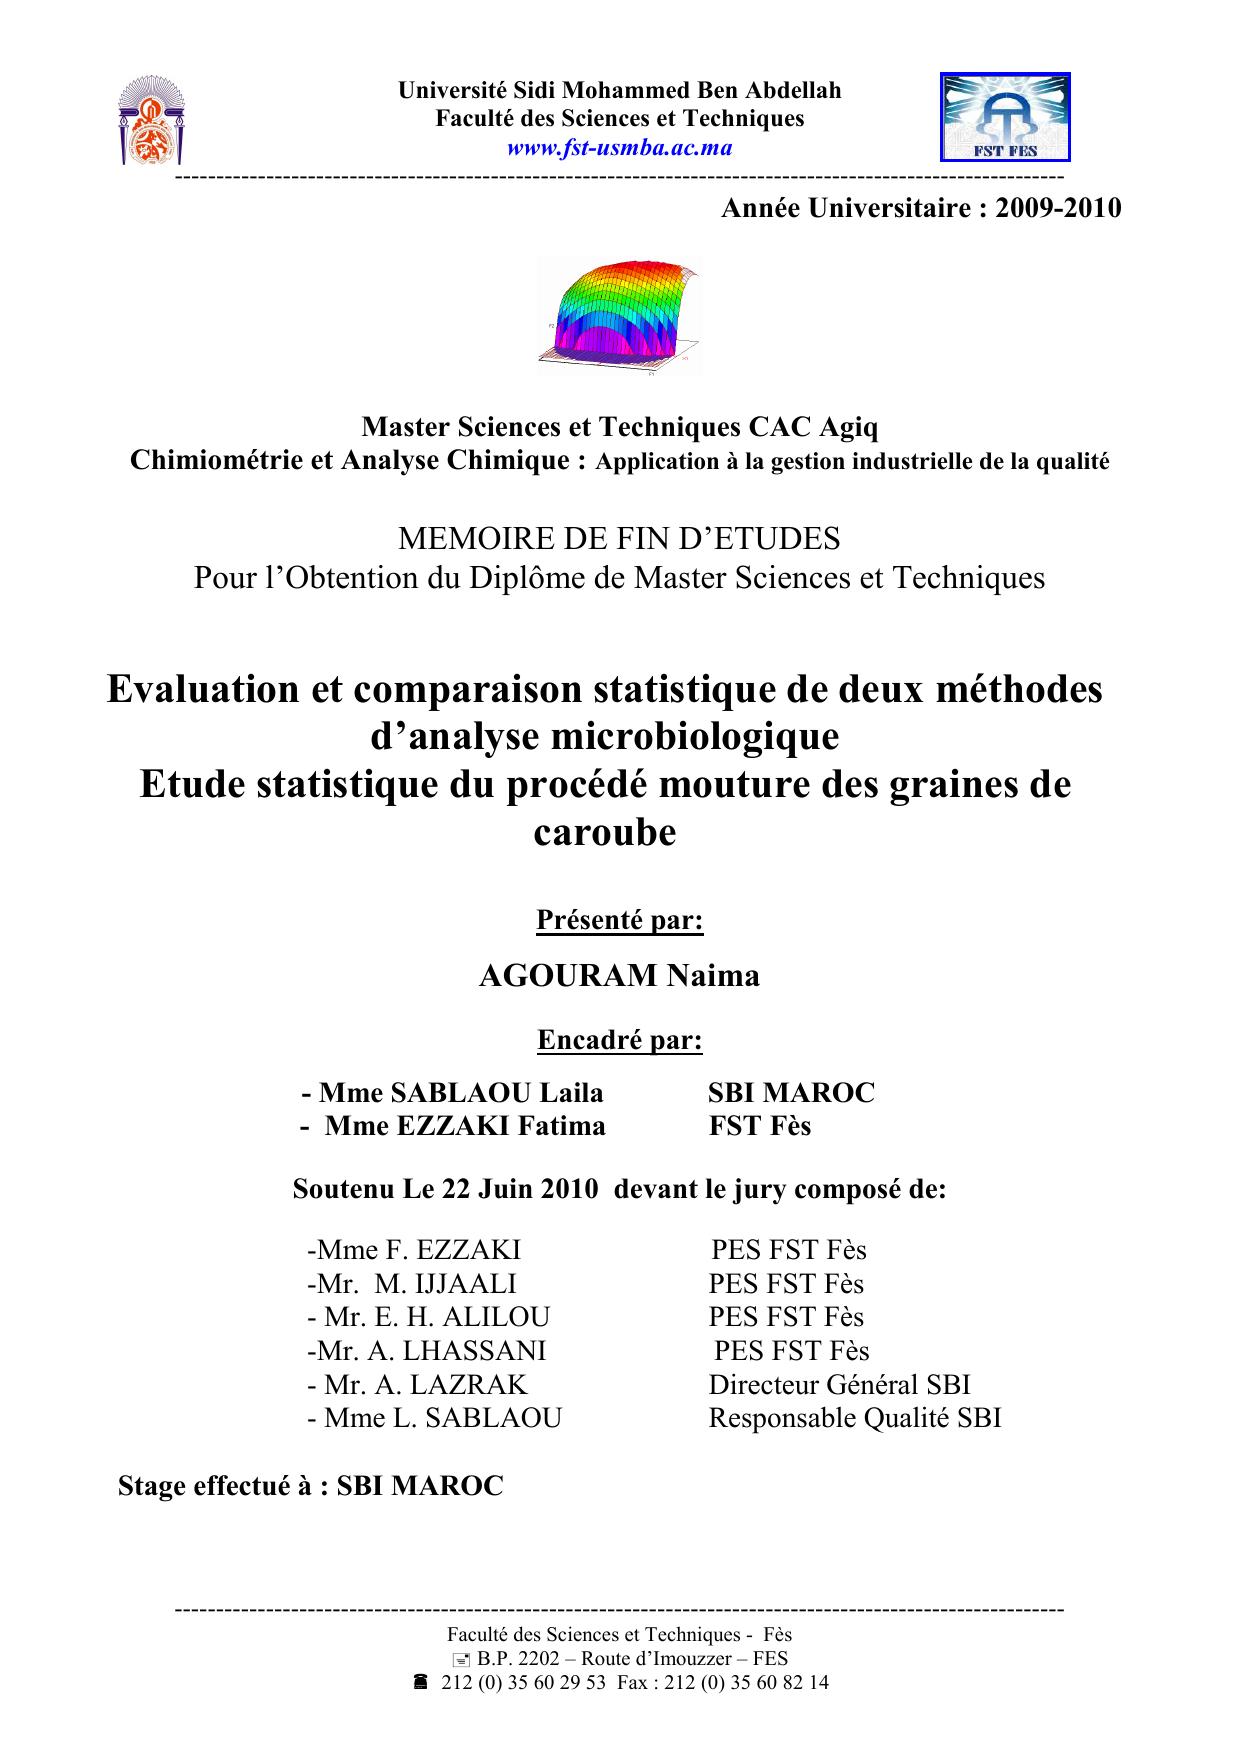 Evaluation et comparaison statistique de deux méthodes d’analyse microbiologique Etude statistique du procédé mouture des graines de caroube